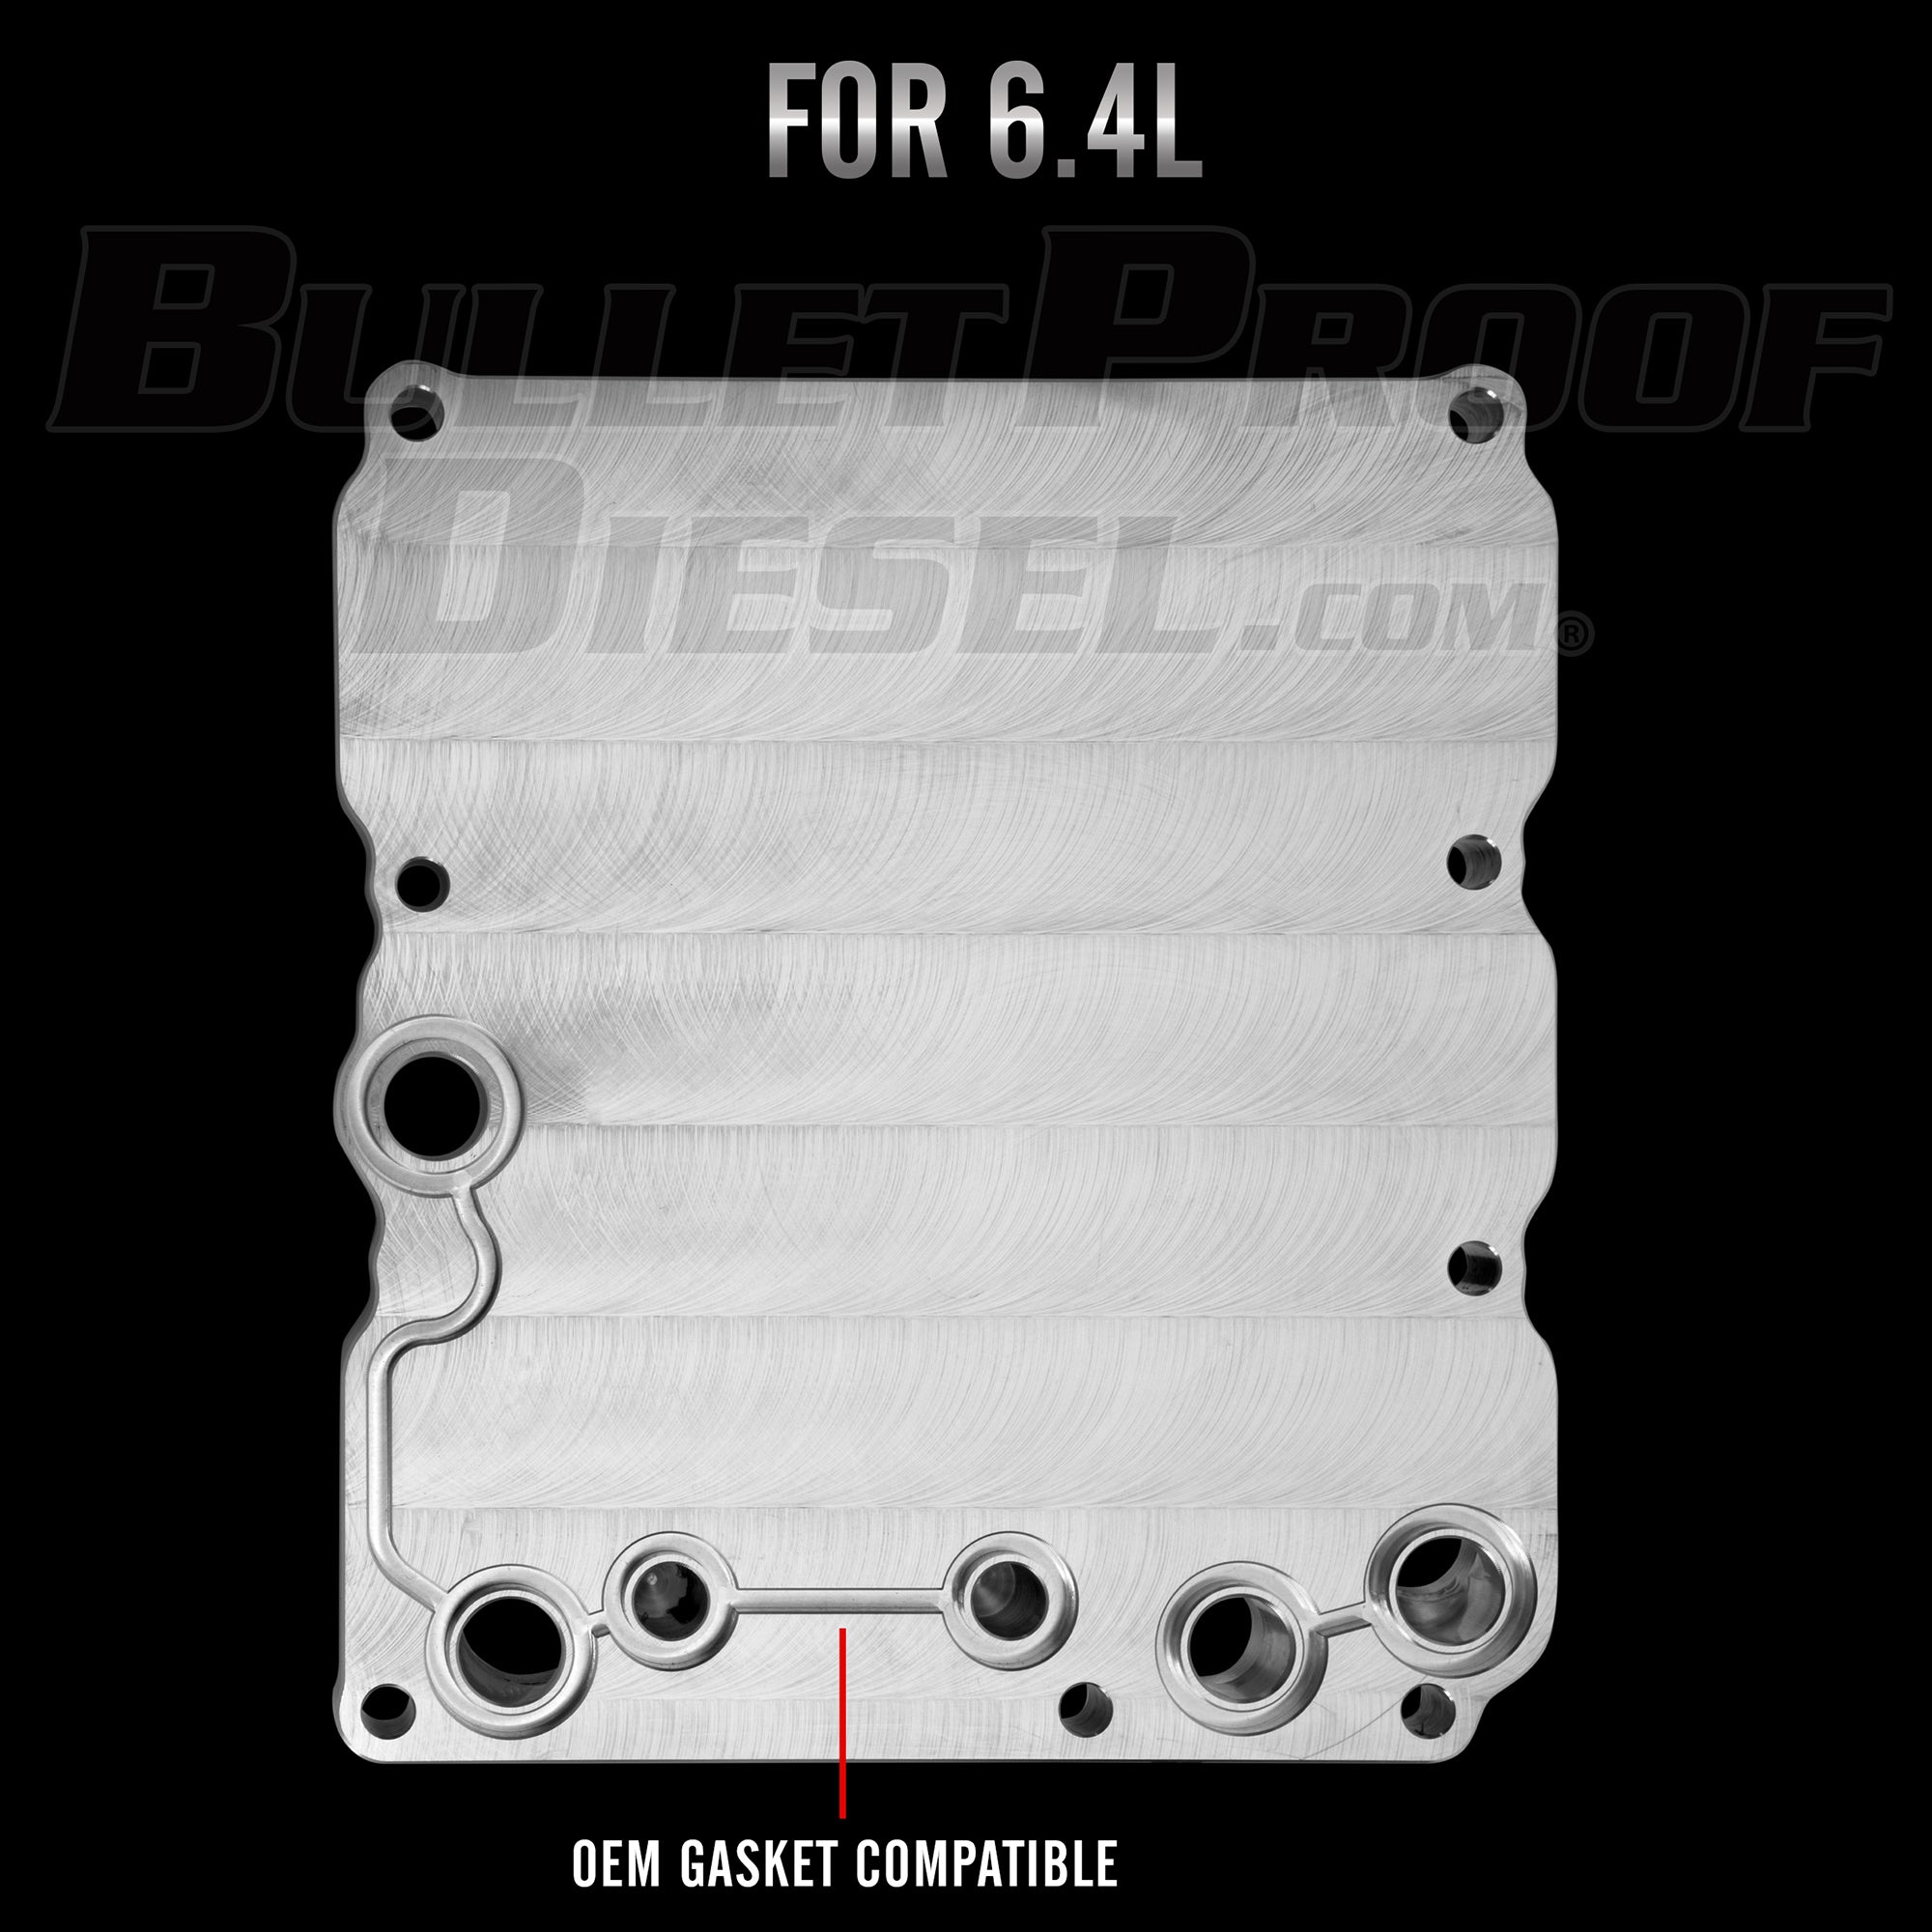 Bullet Proof Diesel 6.4L Oil Cooler Delete Adapter